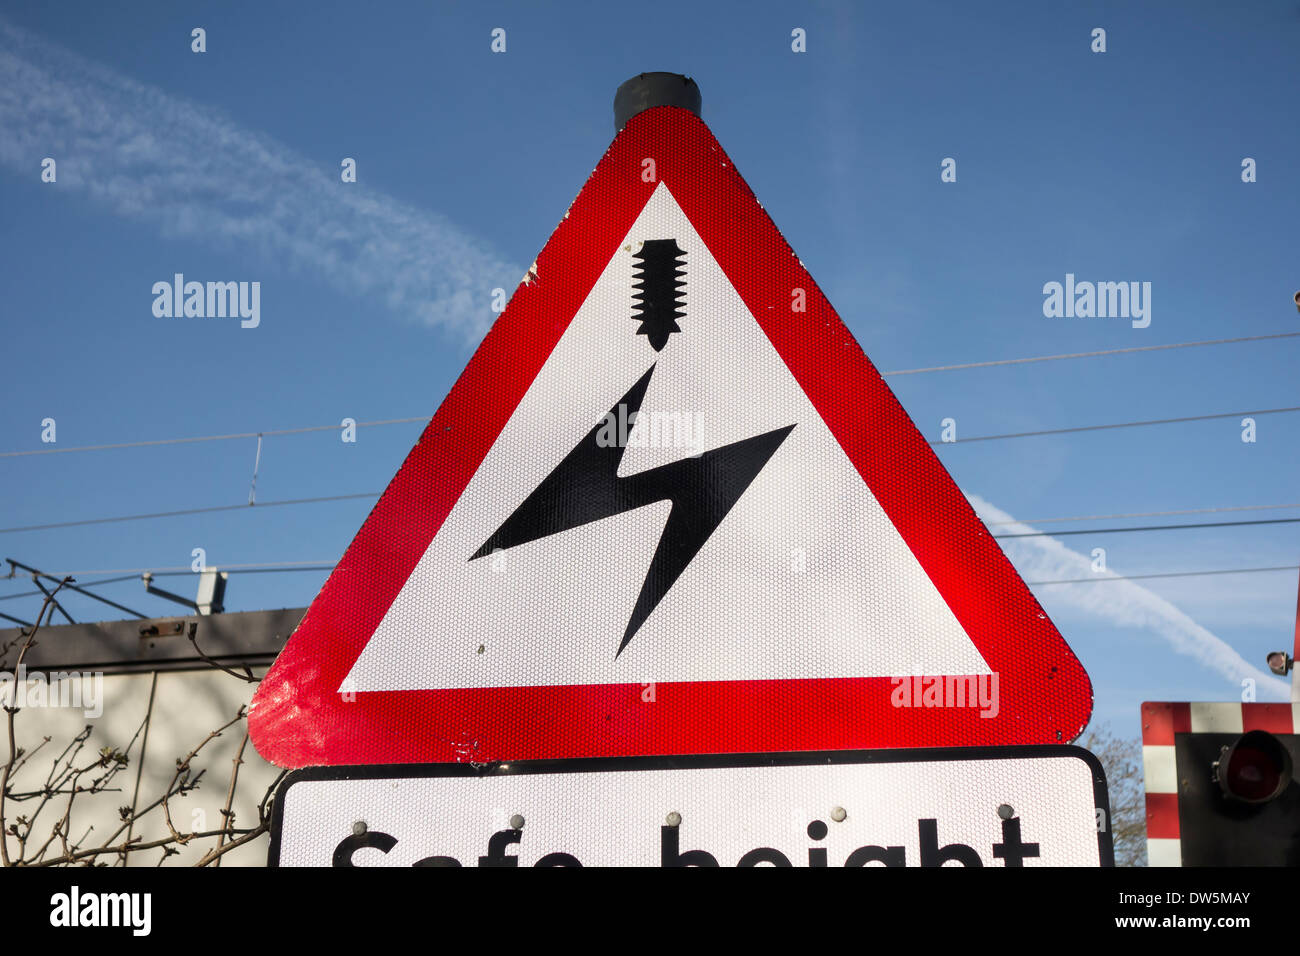 Passage des câbles électriques haute tension panneau d'avertissement à un passage à niveau Banque D'Images